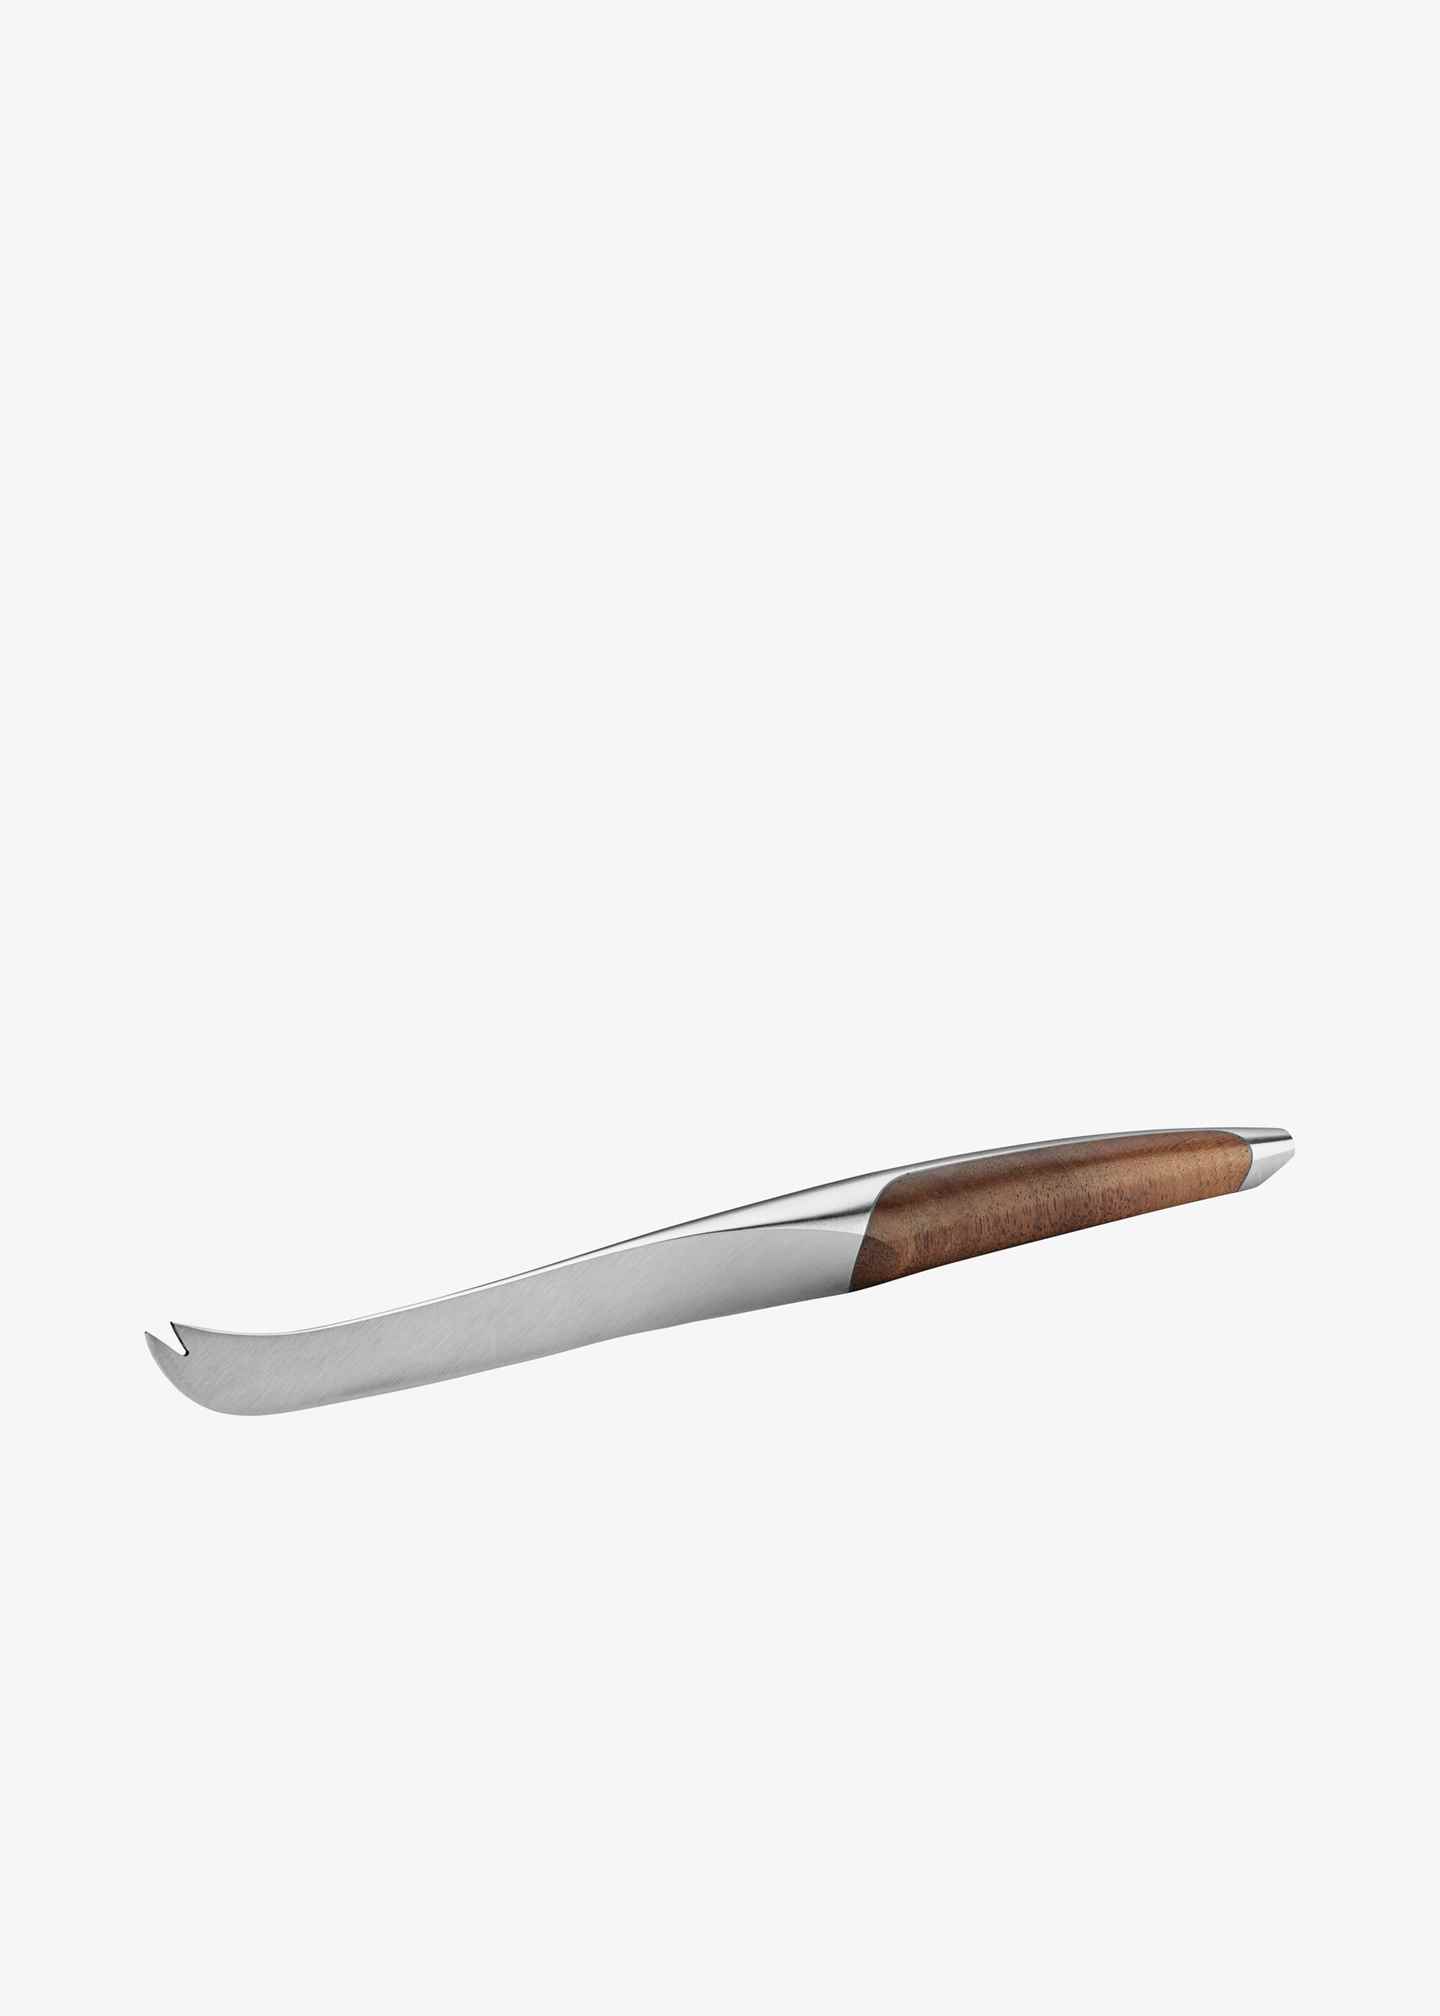 Käsemesser «Sknife»